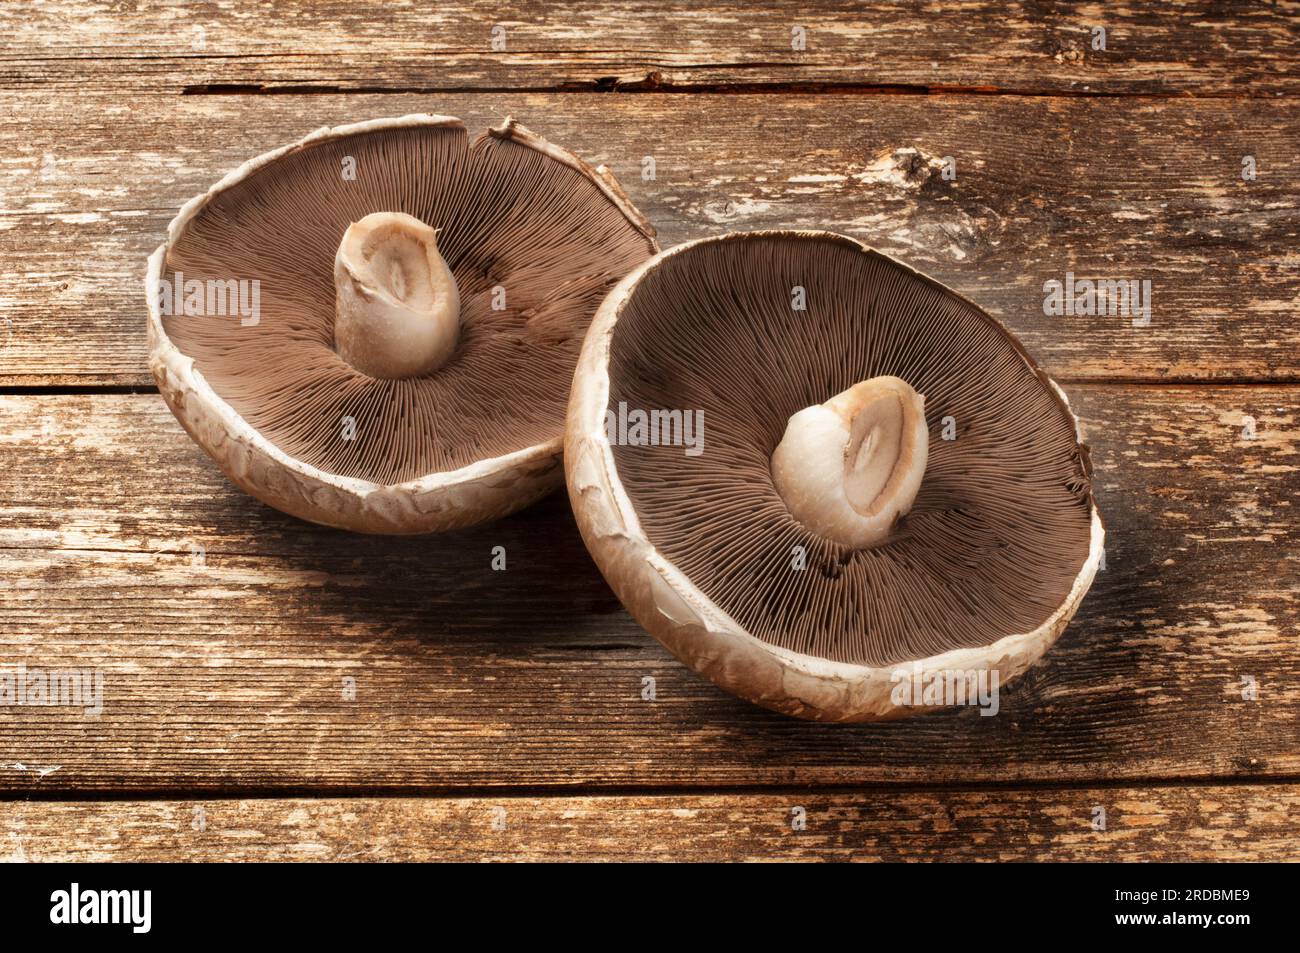 Tiro de estudio de gran hongo portobello en un fondo de madera oscura - John Gollop Foto de stock